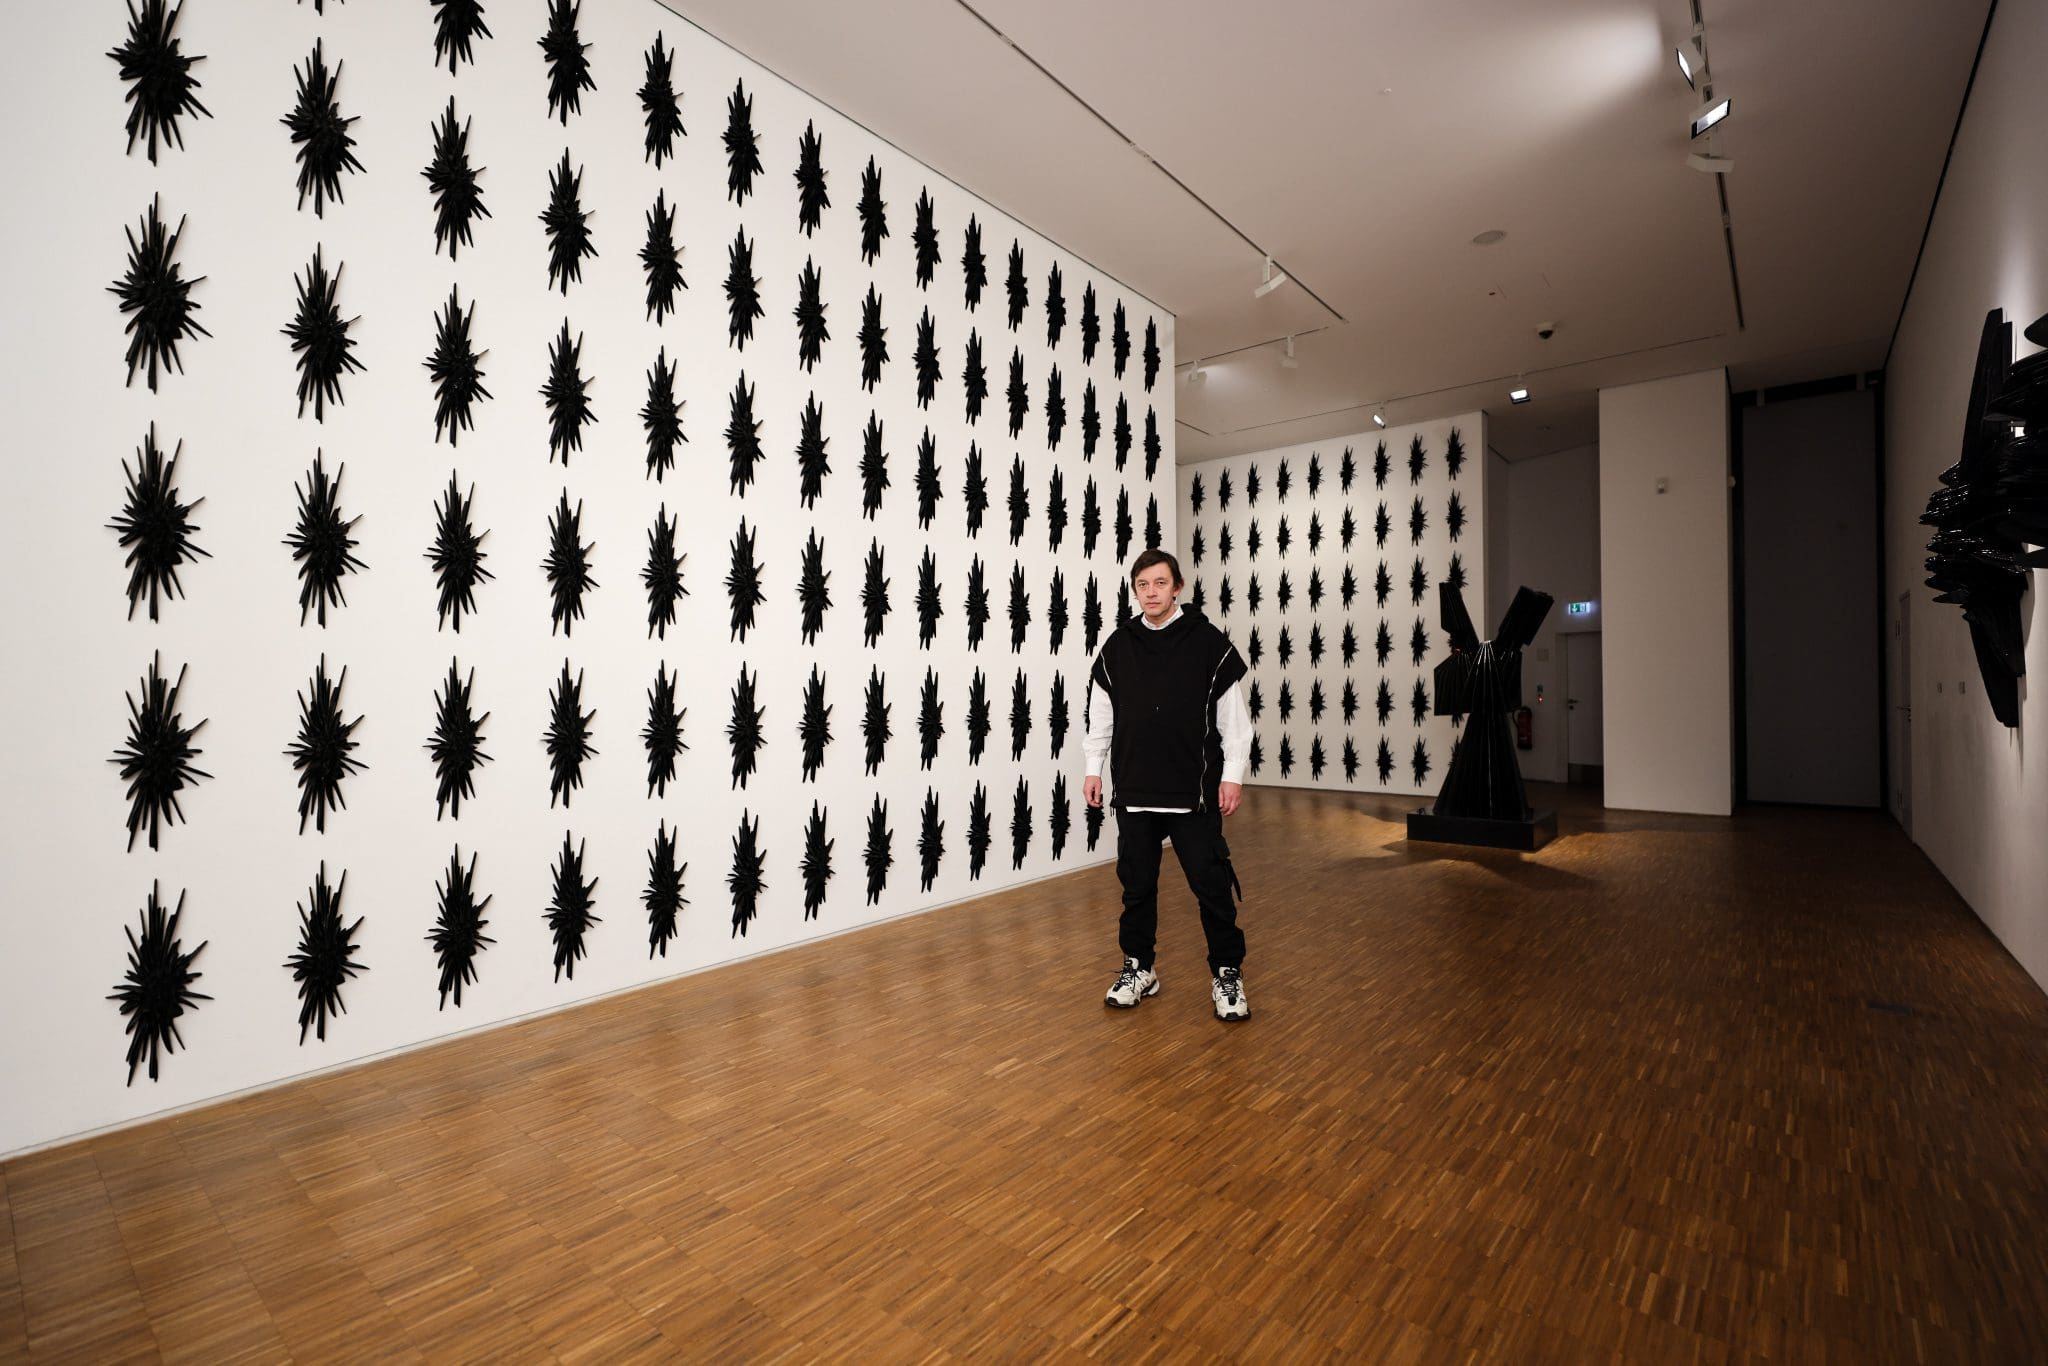 Vasily Klyukin in seiner Ausstellung “Mind Space”, die noch bis zum 29. Januar 2023 in Hagen zu sehen ist. Am 13. Januar um 18 Uhr veranstaltet der Künstler vor dem Hagener Osthaus Museum eine Kunstferormance "Hommage an Joseph Beuys" - Foto Oleksii Zakharov